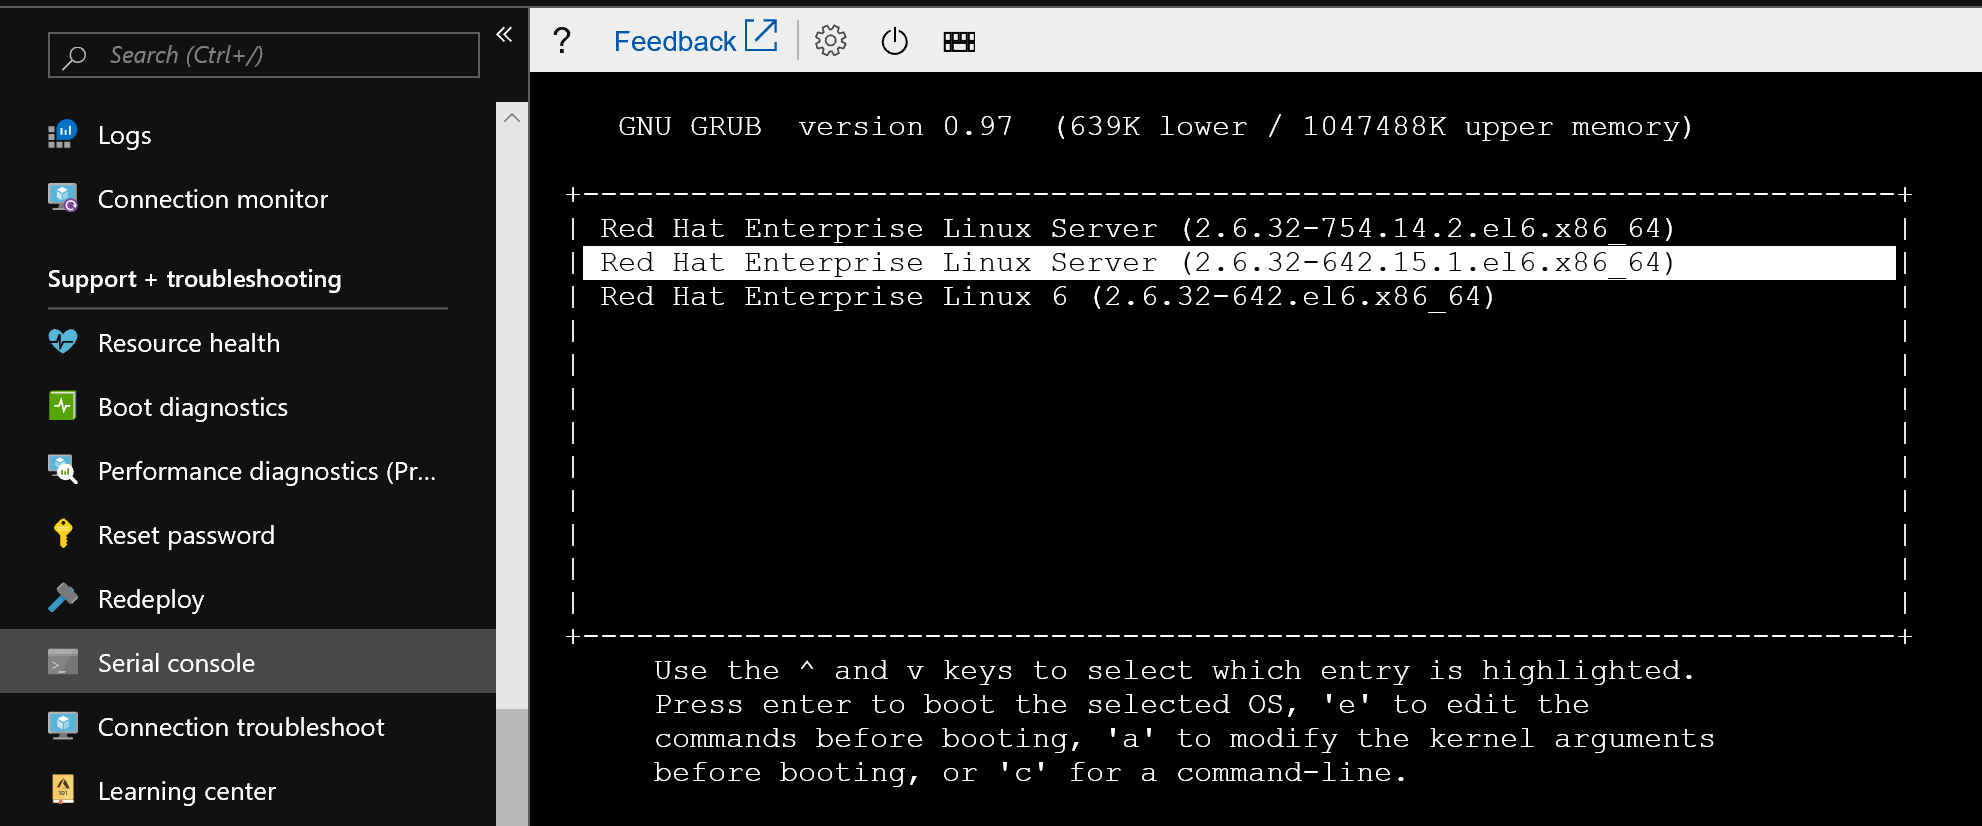 Schermopname van het geselecteerde scherm met het geselecteerde besturingssysteem in GRUB, waarin meerdere kernels kunnen worden gekozen.